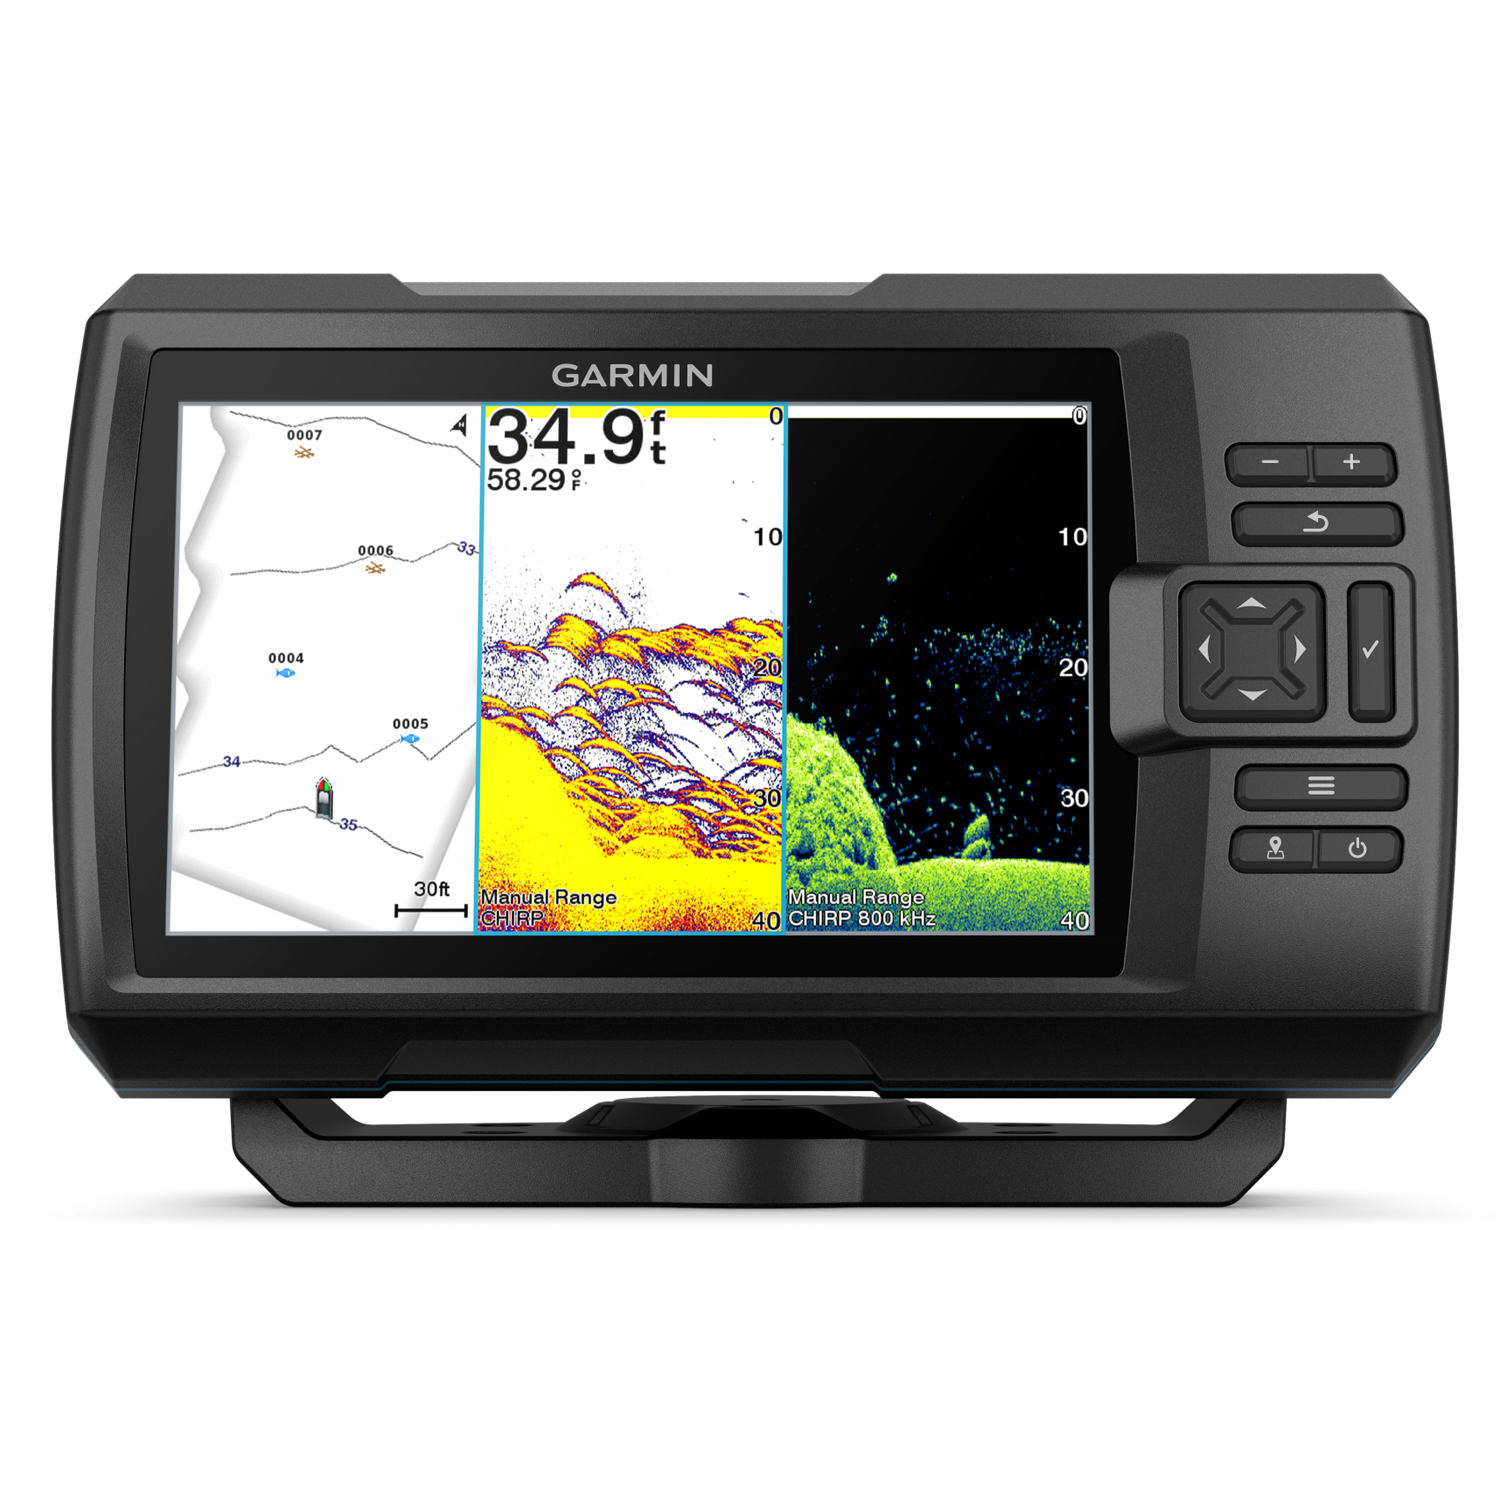 Sonar GPS Garmin Striker Vivid 7cv + GT20 010-02552-00 + Transducer
